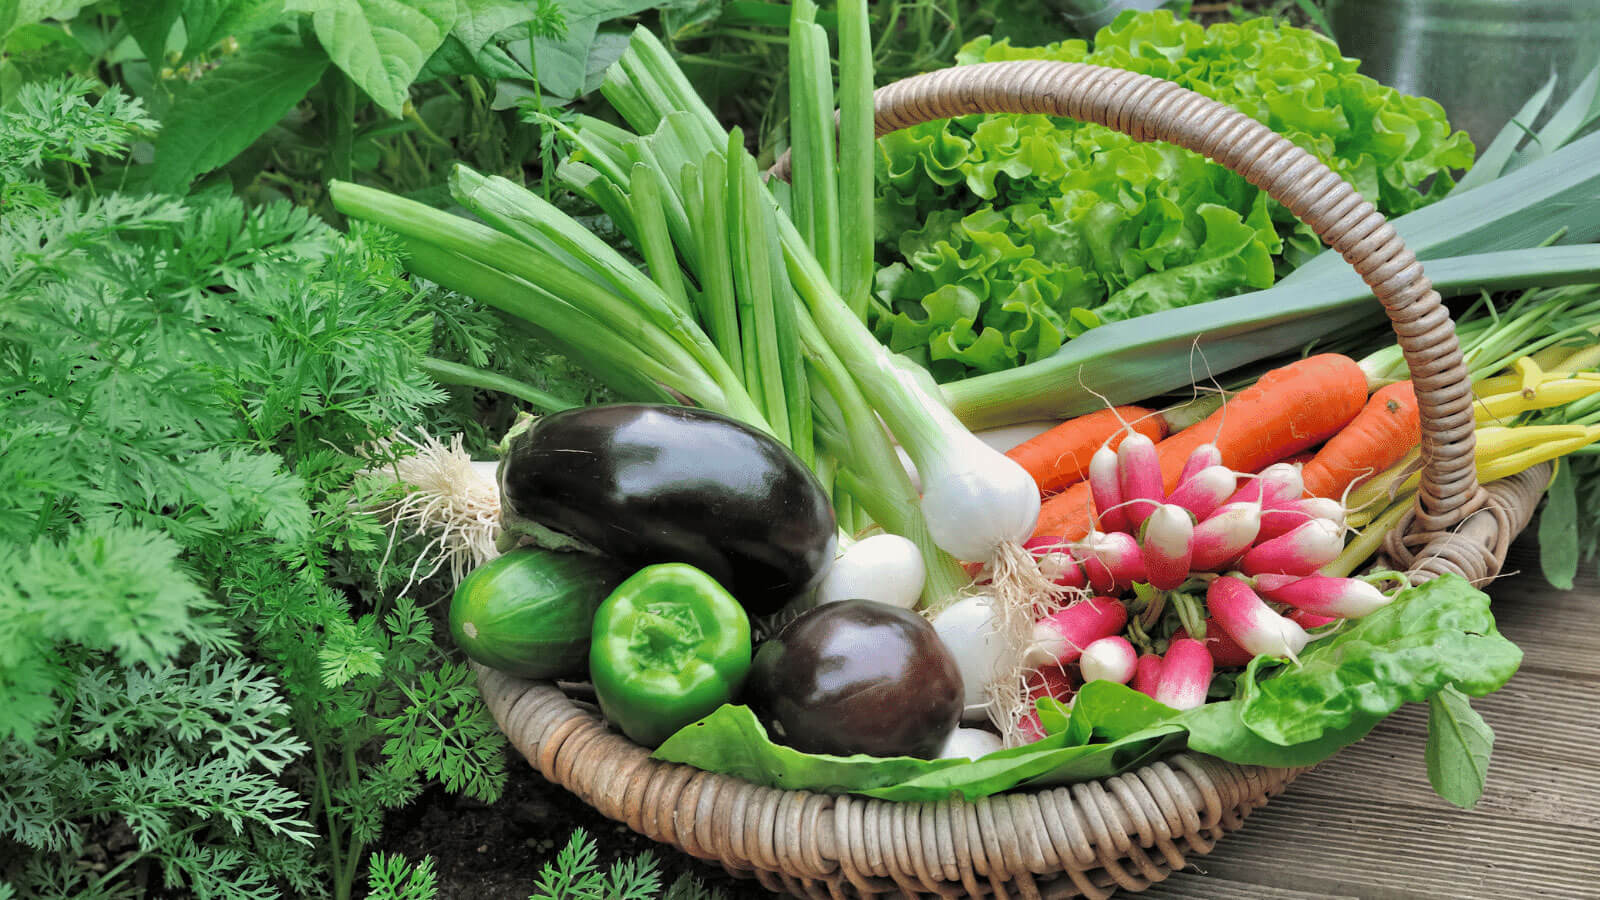 Basket of fresh vegetables.